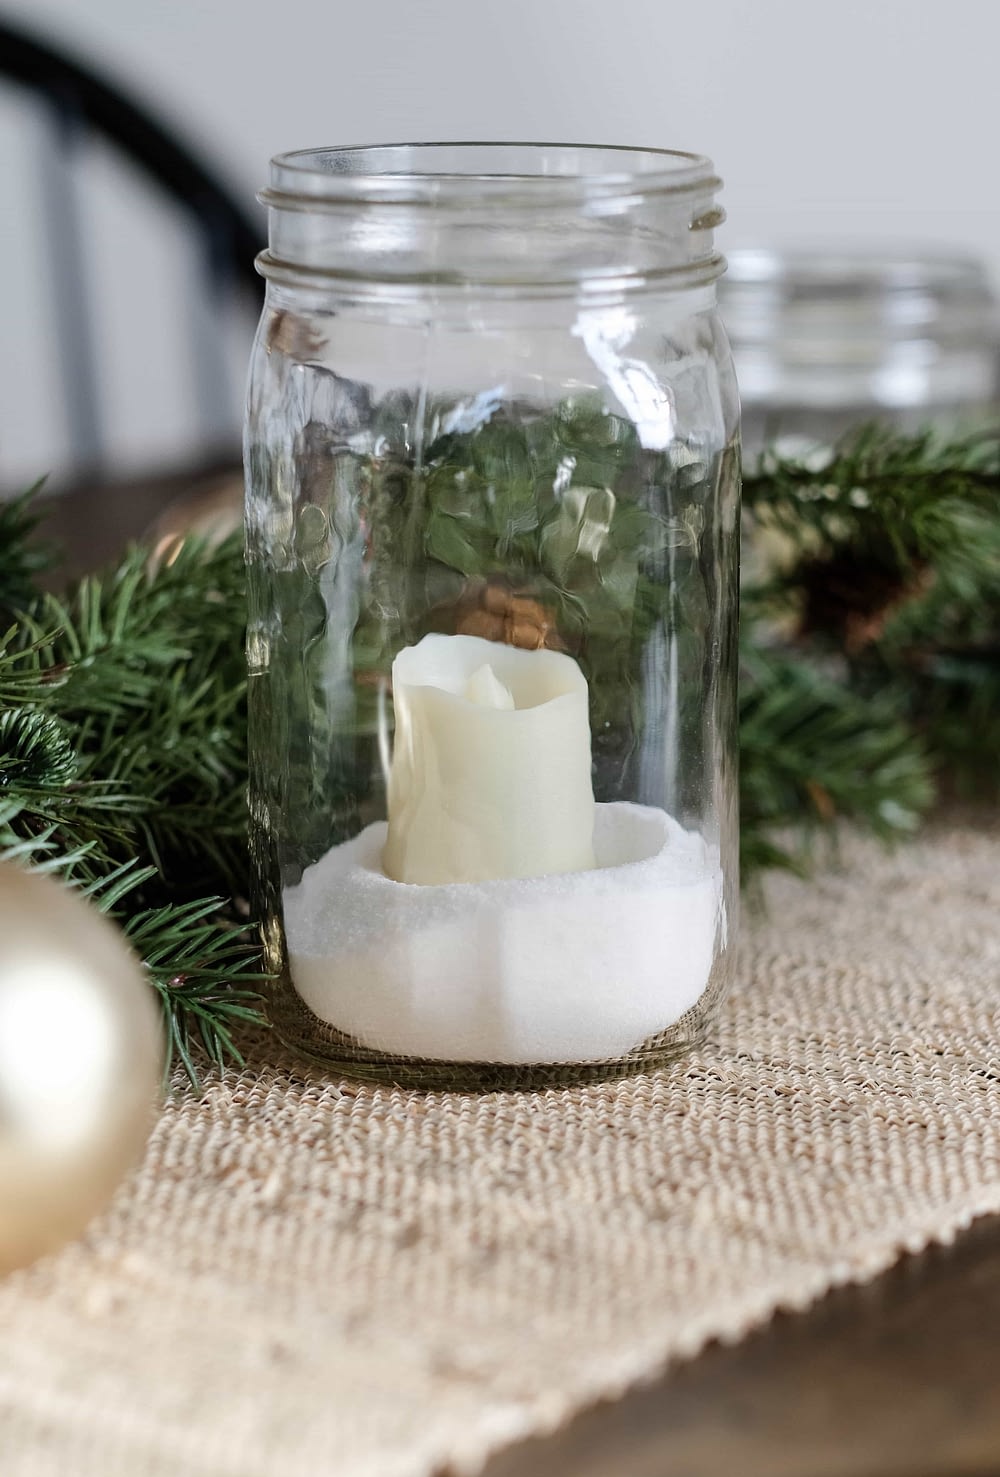 Simple Christmas Decor Ideas - Mason Jar Candle Holder